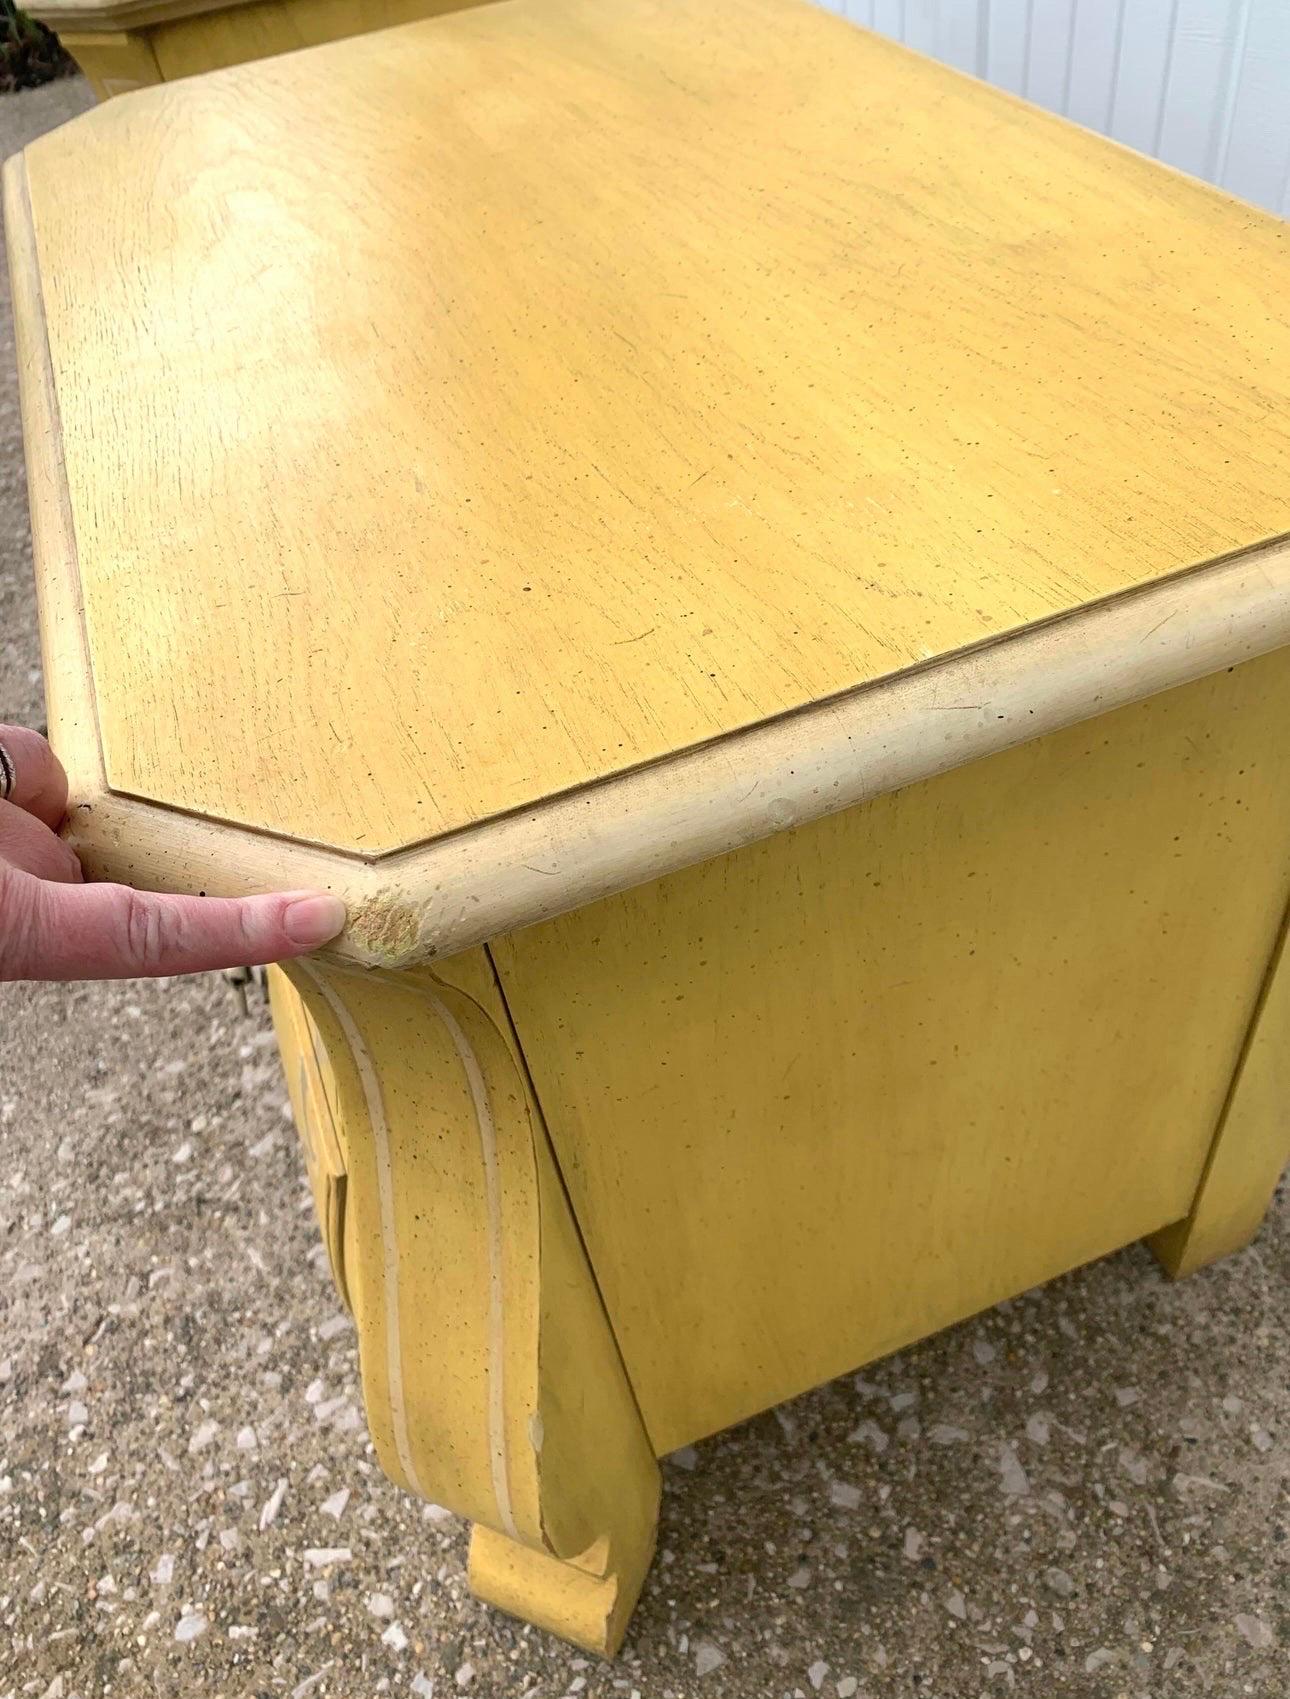 Vintage 1960's Drexel French Bombay chest nightstands a pair. En bon état vintage. En peinture faux bois rococo jaune moutarde d'origine. A besoin d'être restauré. Une tache d'eau de javel sur le dessus de l'un et quelques éclats ici et là que vous